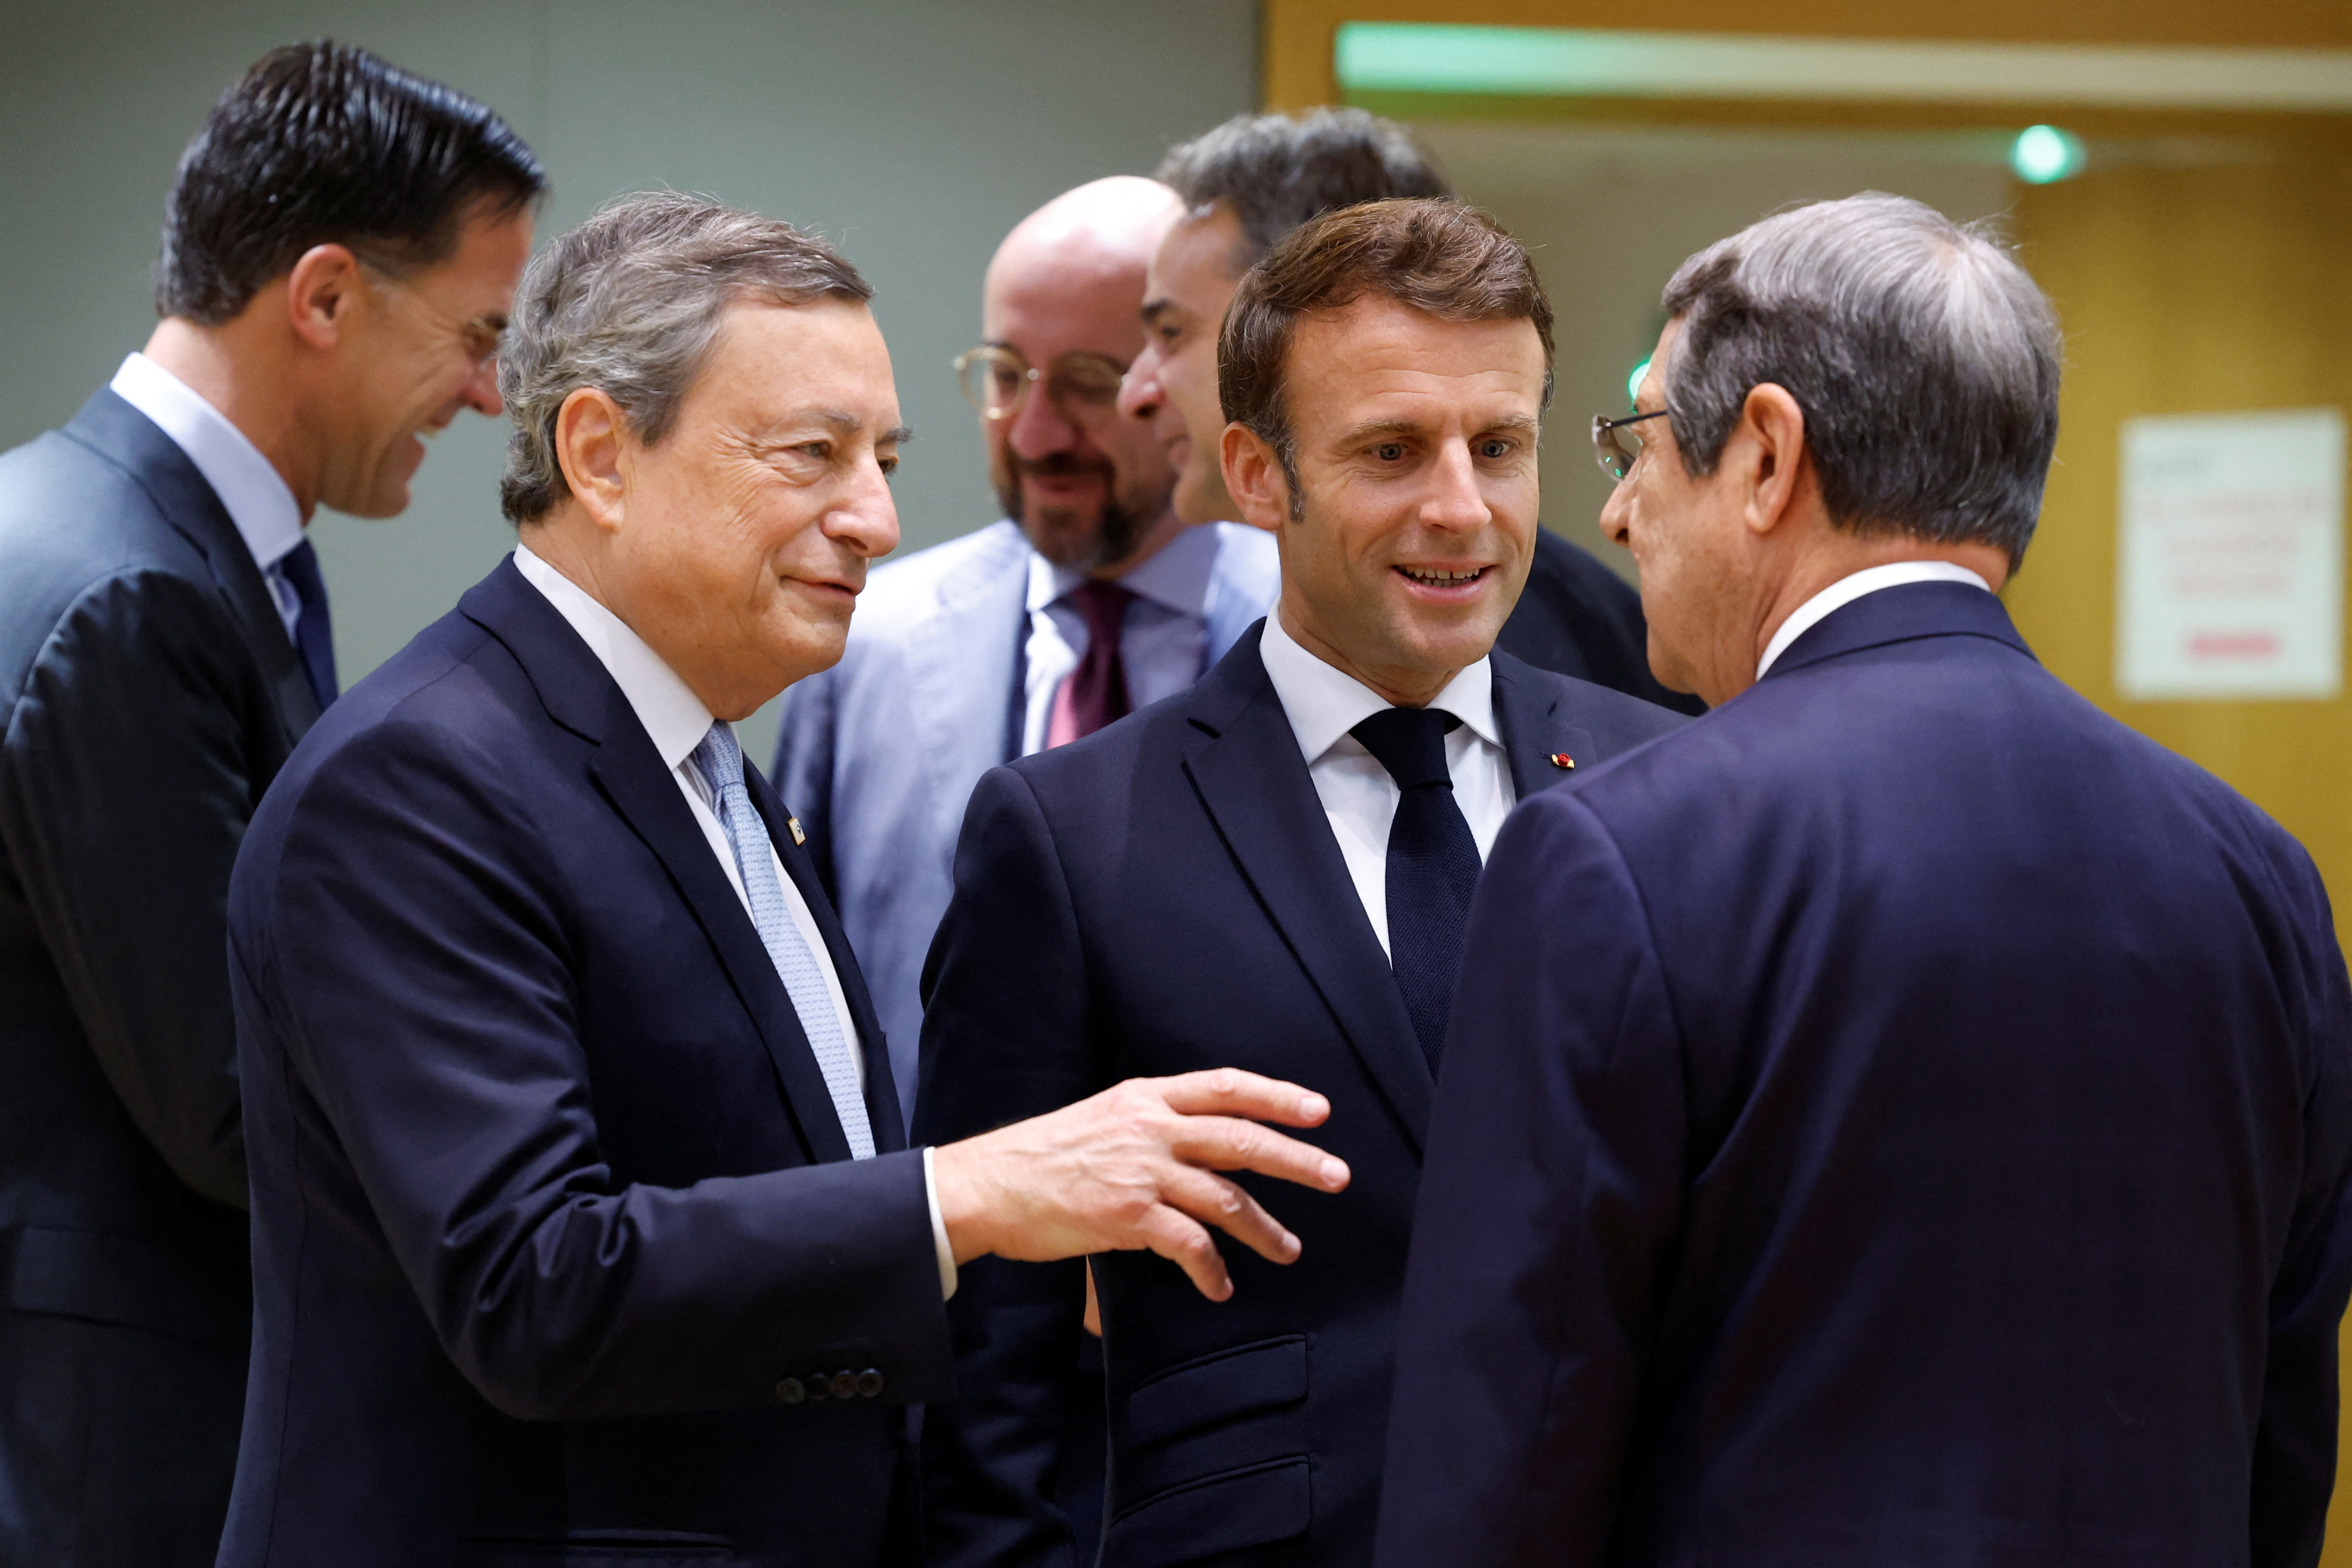 EU Leaders meet in Brussels